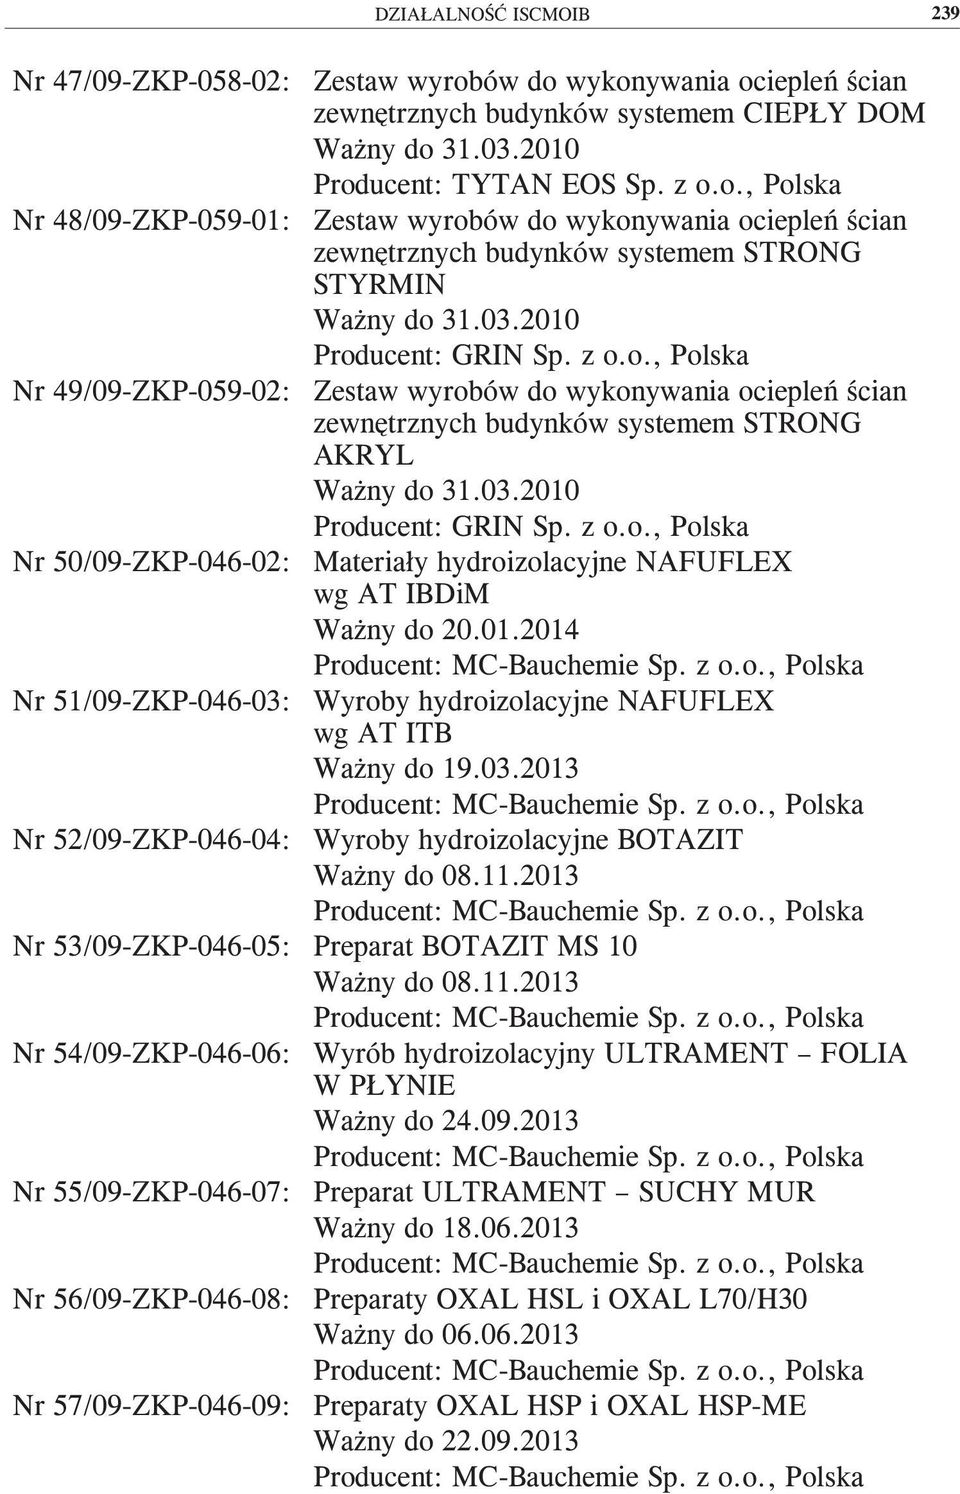 01.2014 Nr 51/09-ZKP-046-03: Wyroby hydroizolacyjne NAFUFLEX wg AT ITB Ważny do 19.03.2013 Nr 52/09-ZKP-046-04: Wyroby hydroizolacyjne BOTAZIT Ważny do 08.11.